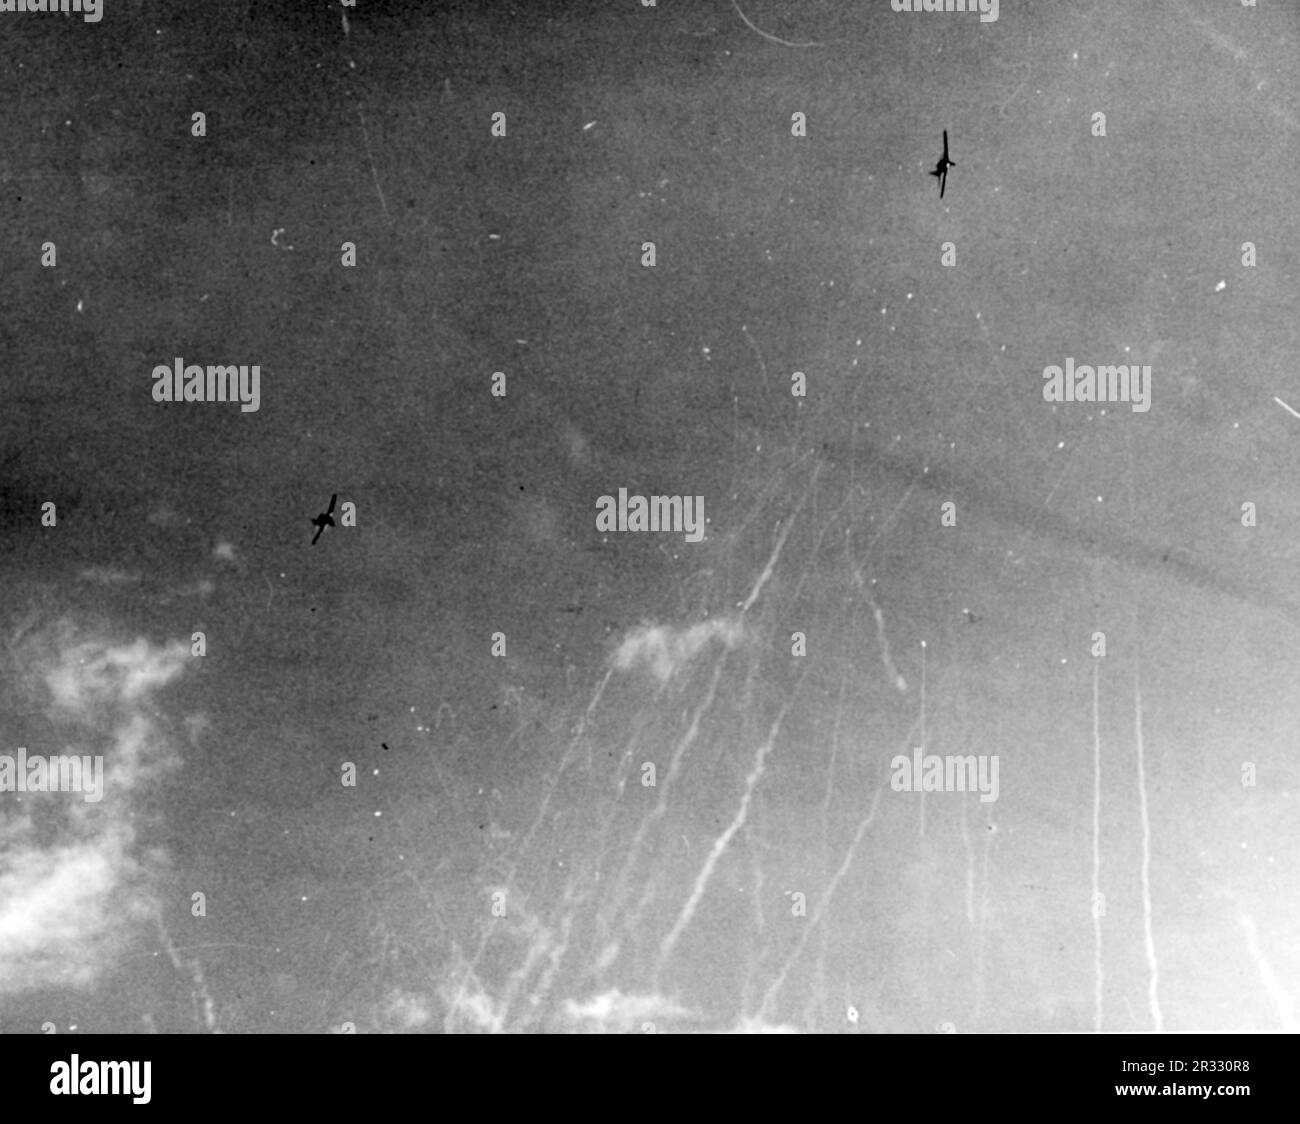 NEGLI STATI UNITI Navy Grumman F6F Hellcat pilotato da Ensign Lindskog cerca di intercettare un aereo suicida giapponese Mitsubishi A6M5 kamikaze che ha attaccato il vettore di scorta USS Suwannee (CVE-27) al largo delle Filippine il 25 ottobre 1944. Notate la bomba sotto la fusoliera degli anni 'A6M, e il crescente incendio antiaereo della USS Suwannee. Pochi secondi dopo, il A6M ha colpito appena in avanti del dopo ascensore. Foto Stock